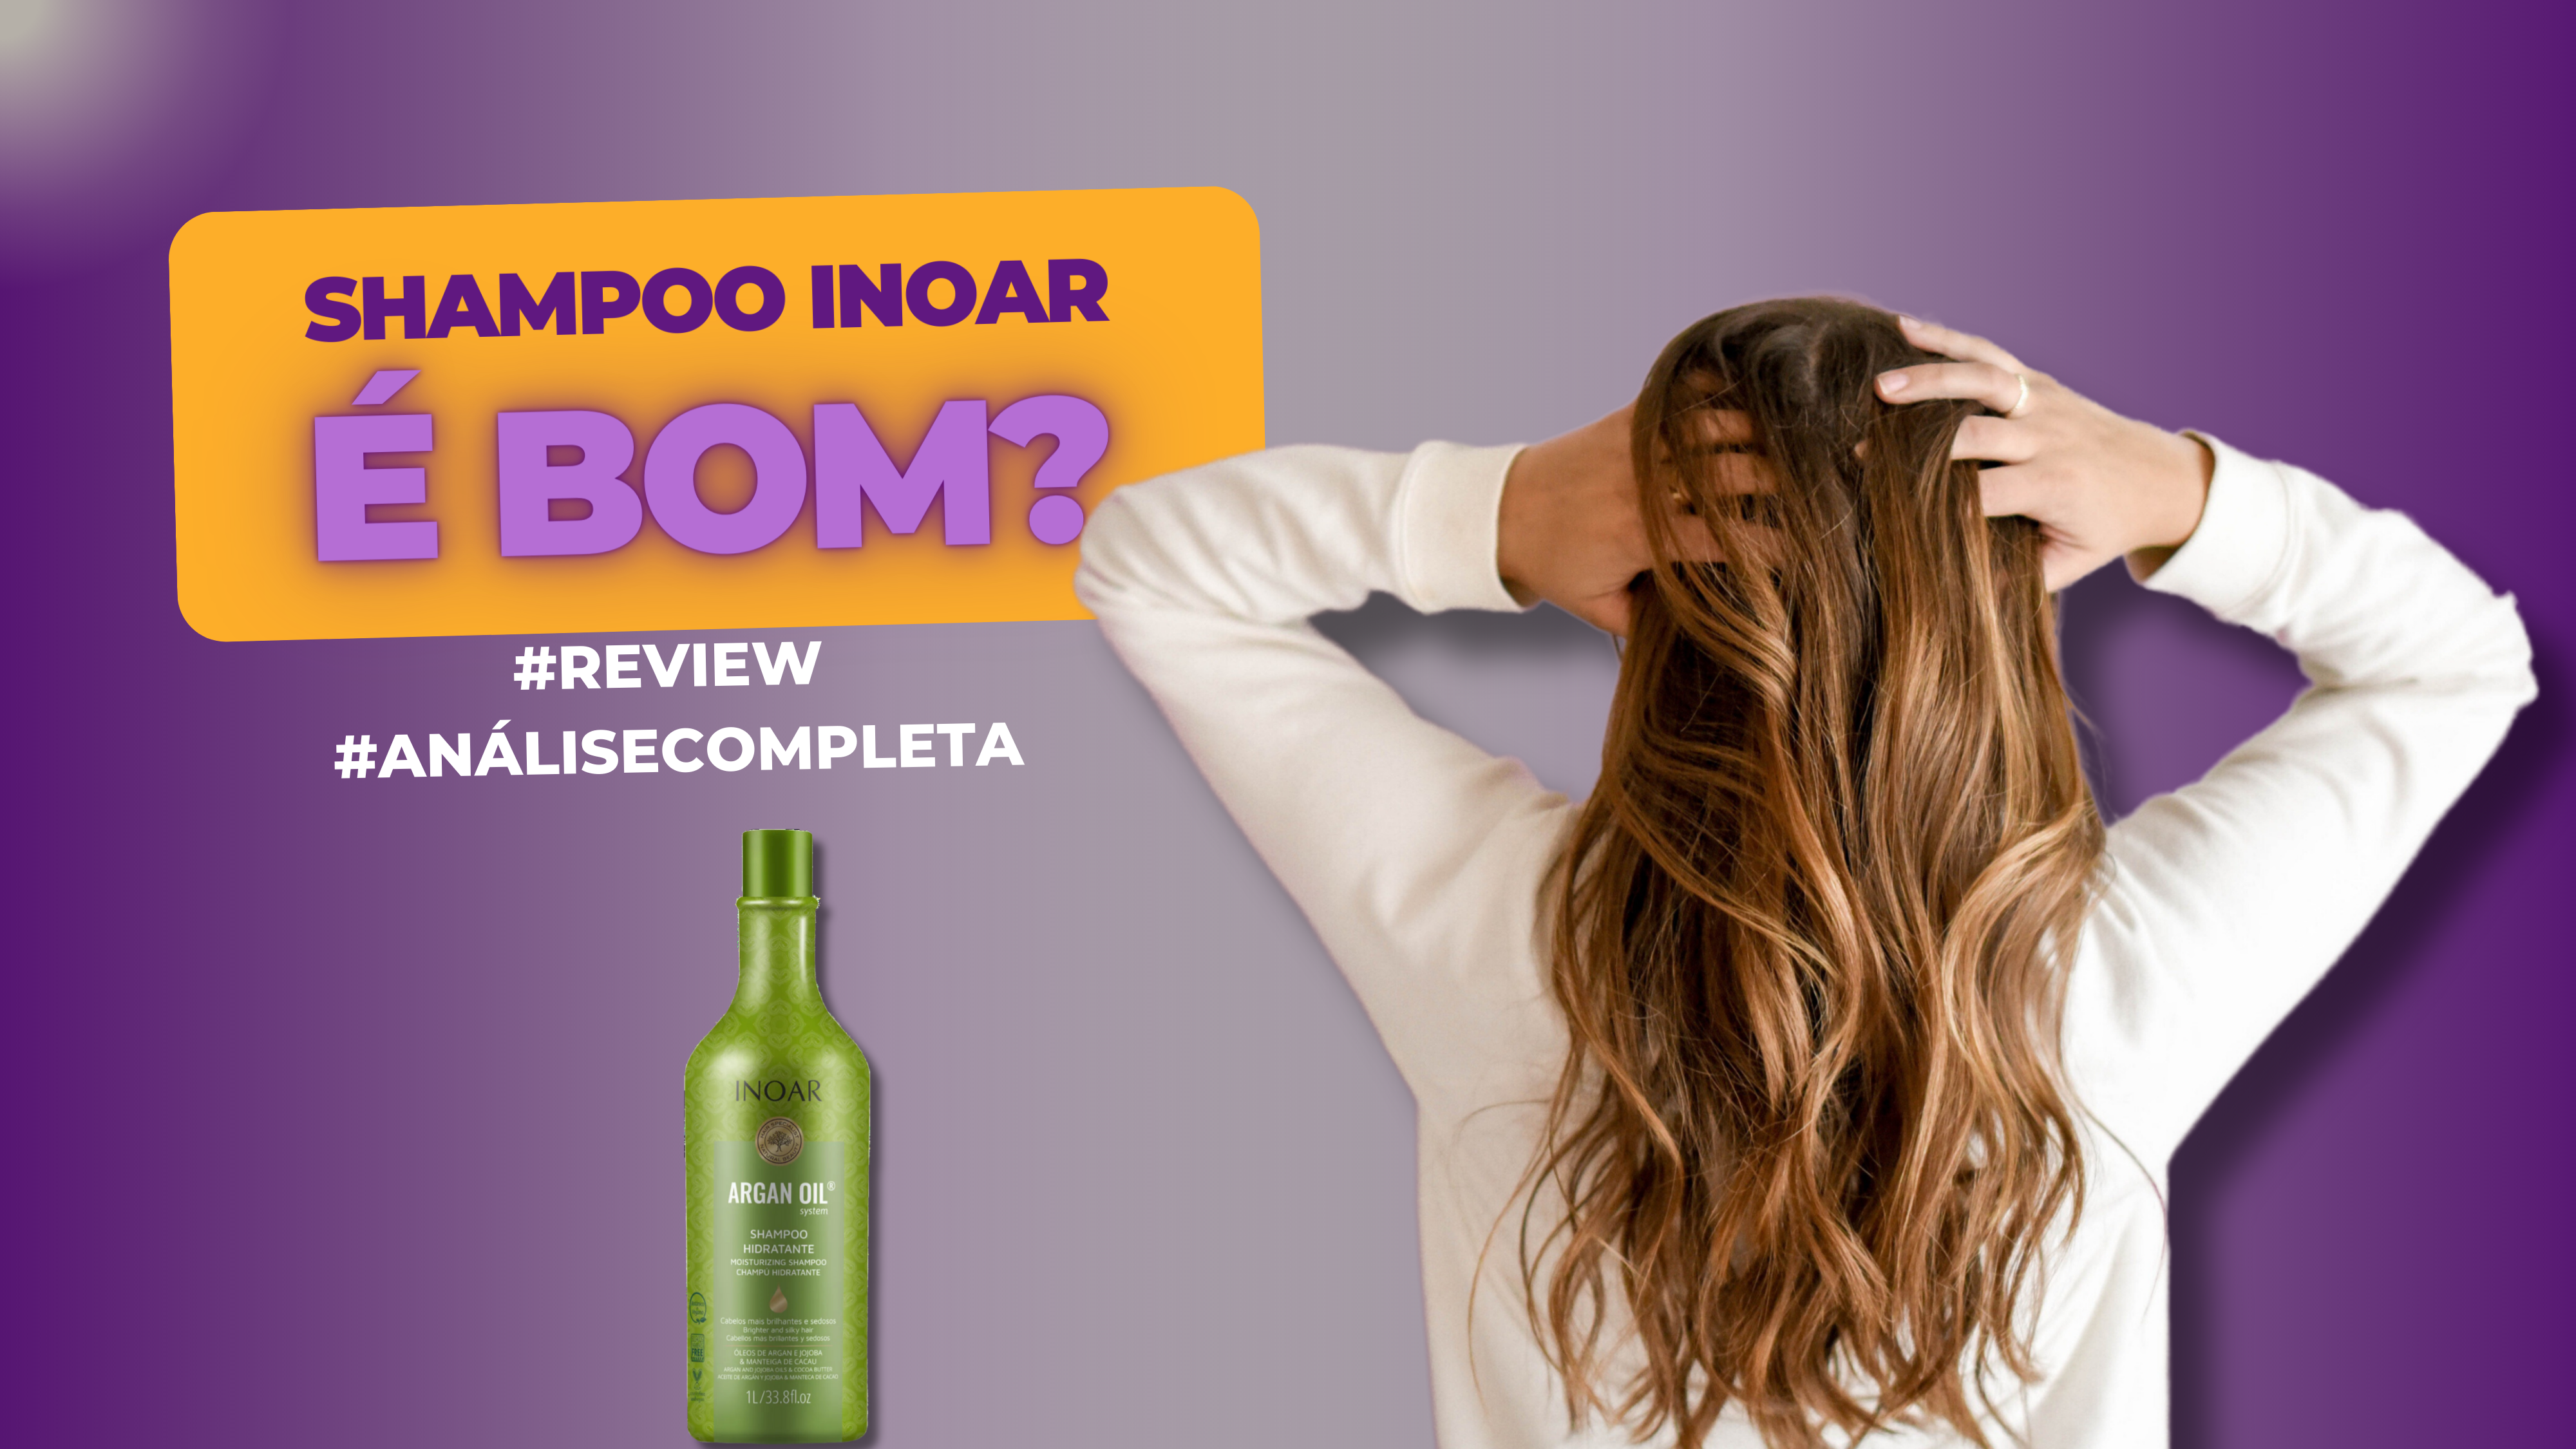 Shampoo Inoar é Bom